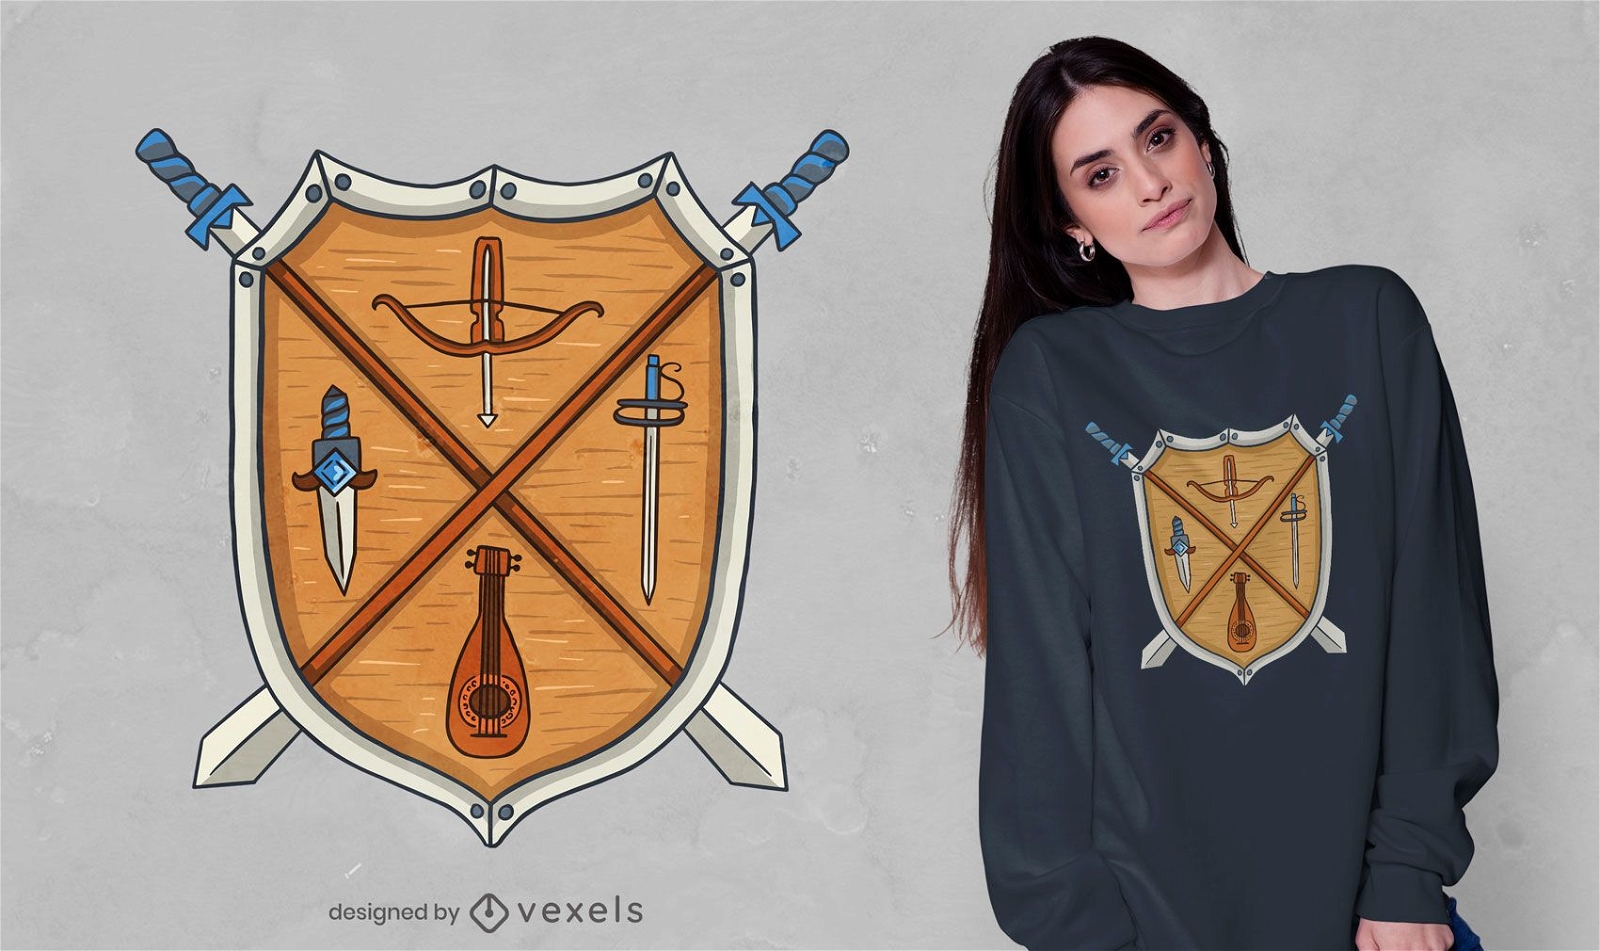 Dise?o de camiseta con escudo medieval.